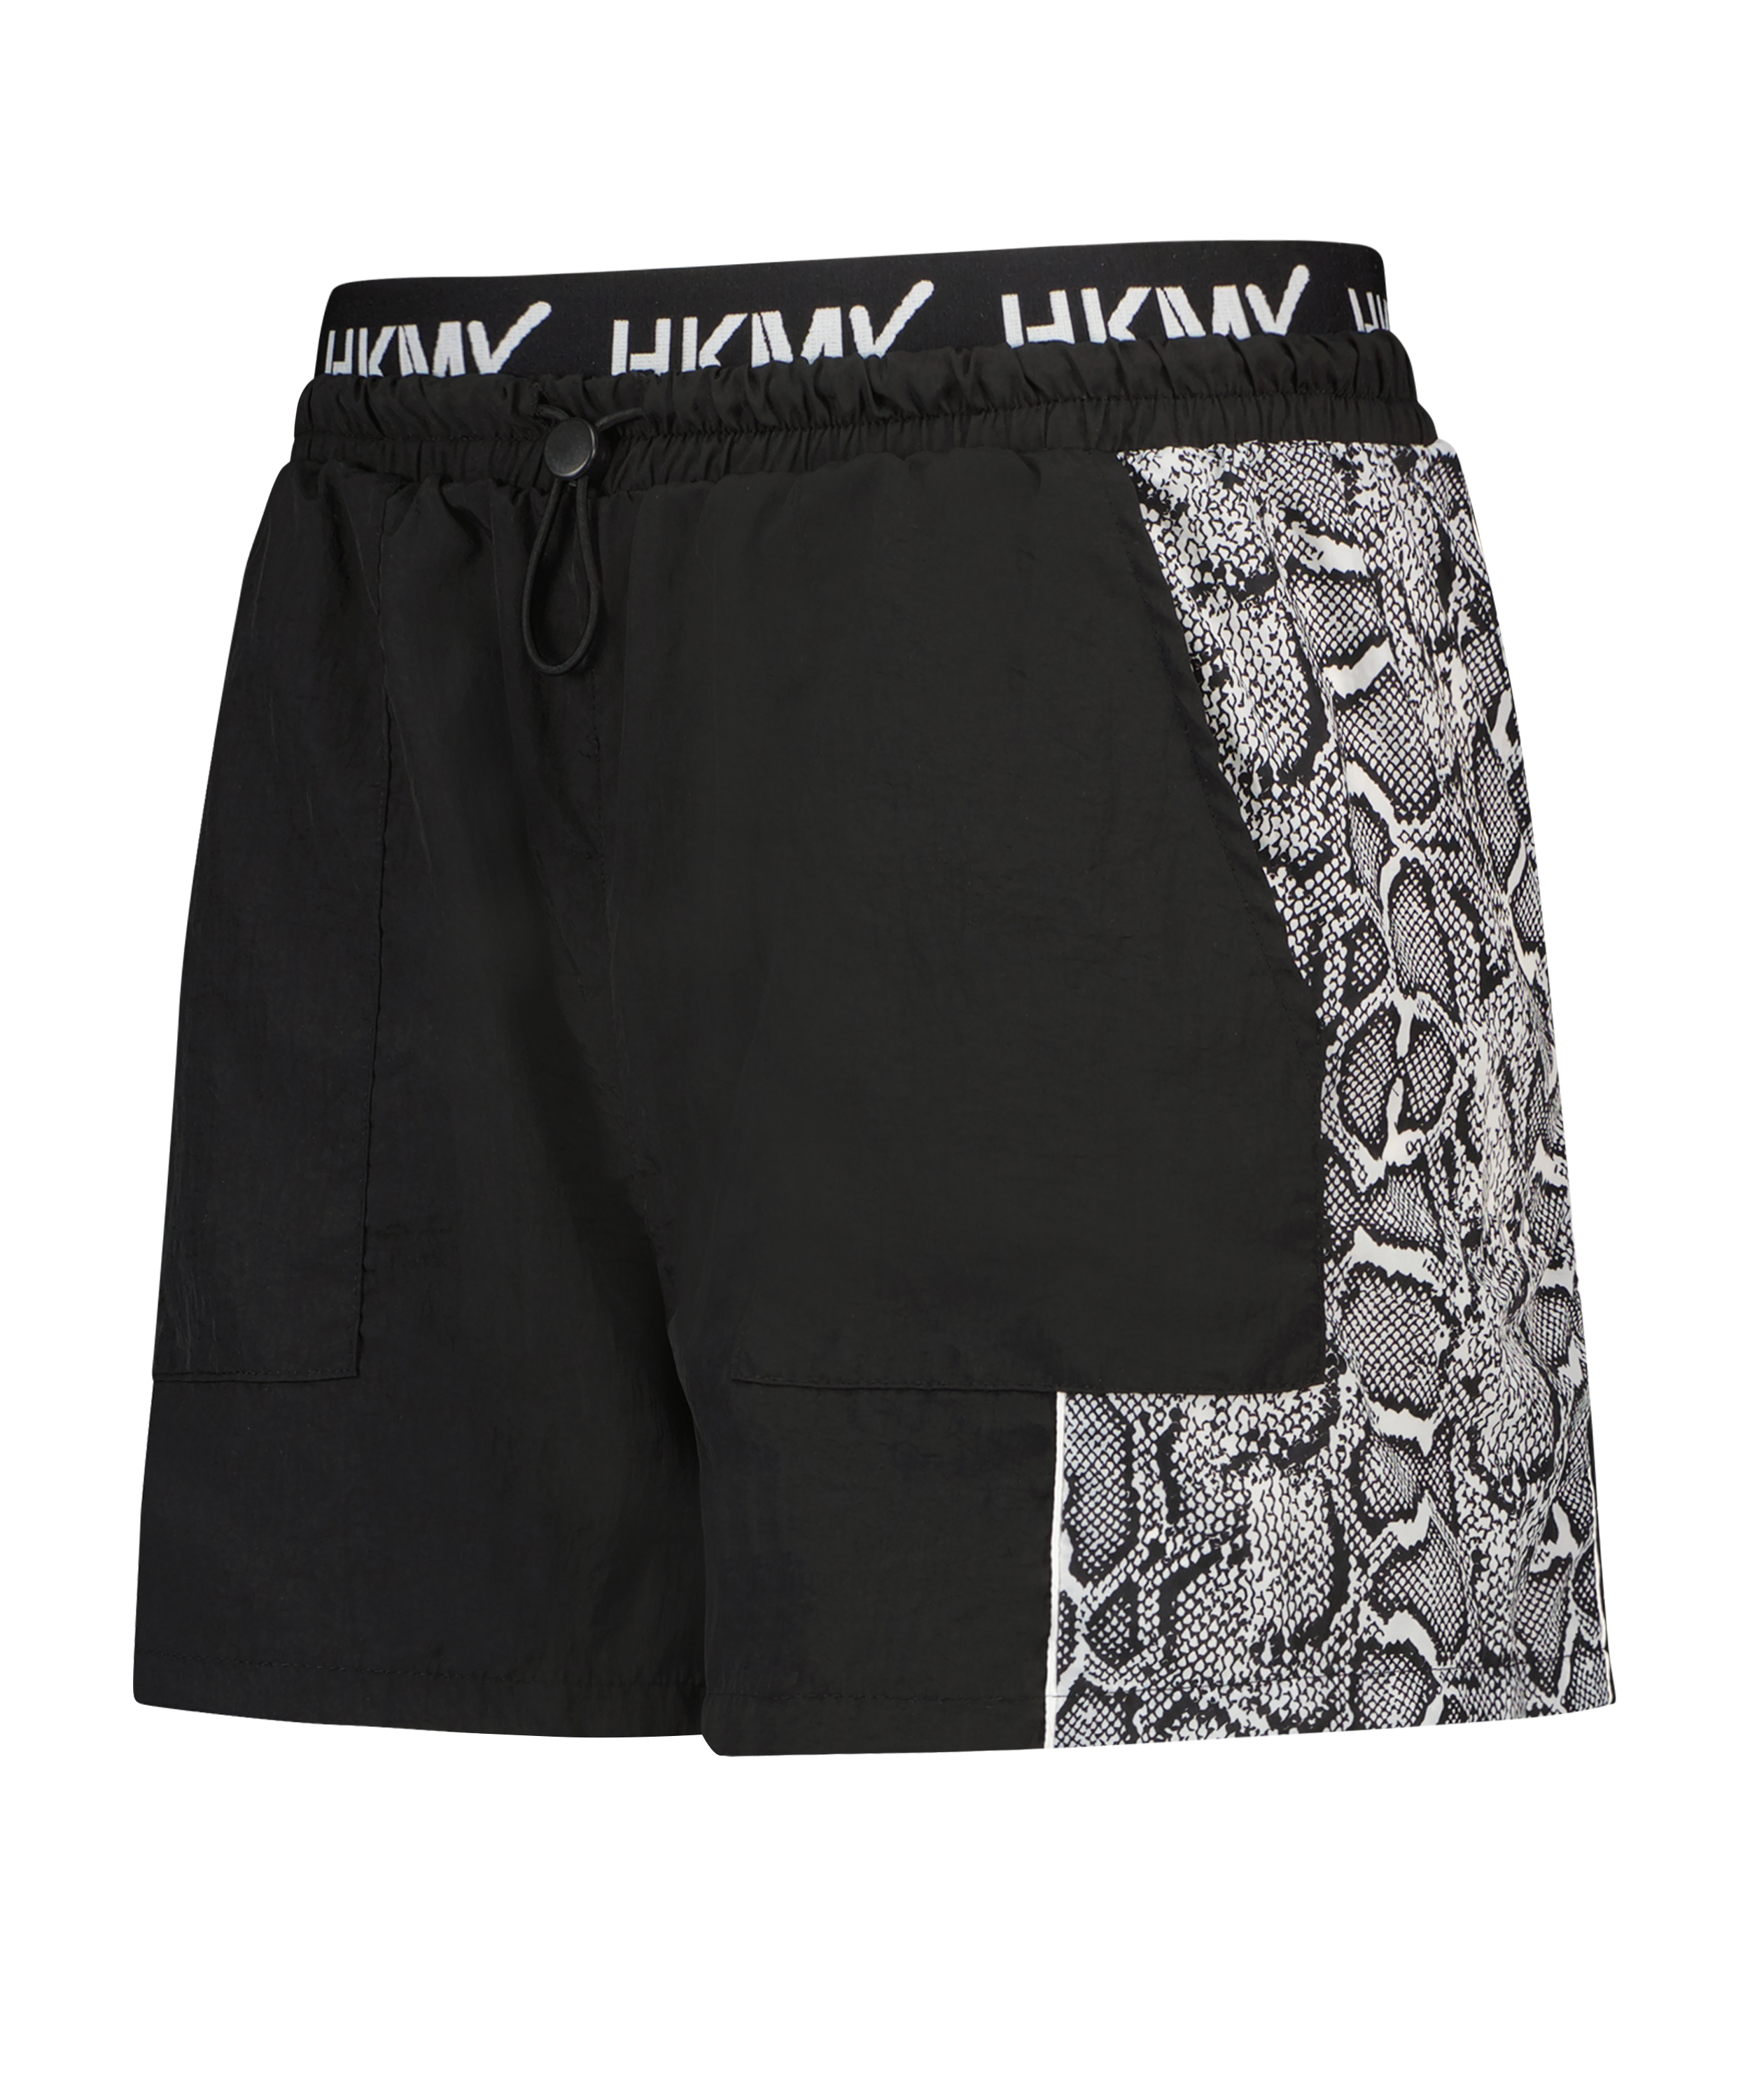 HKMX Sport Shorts, Schwarz, main